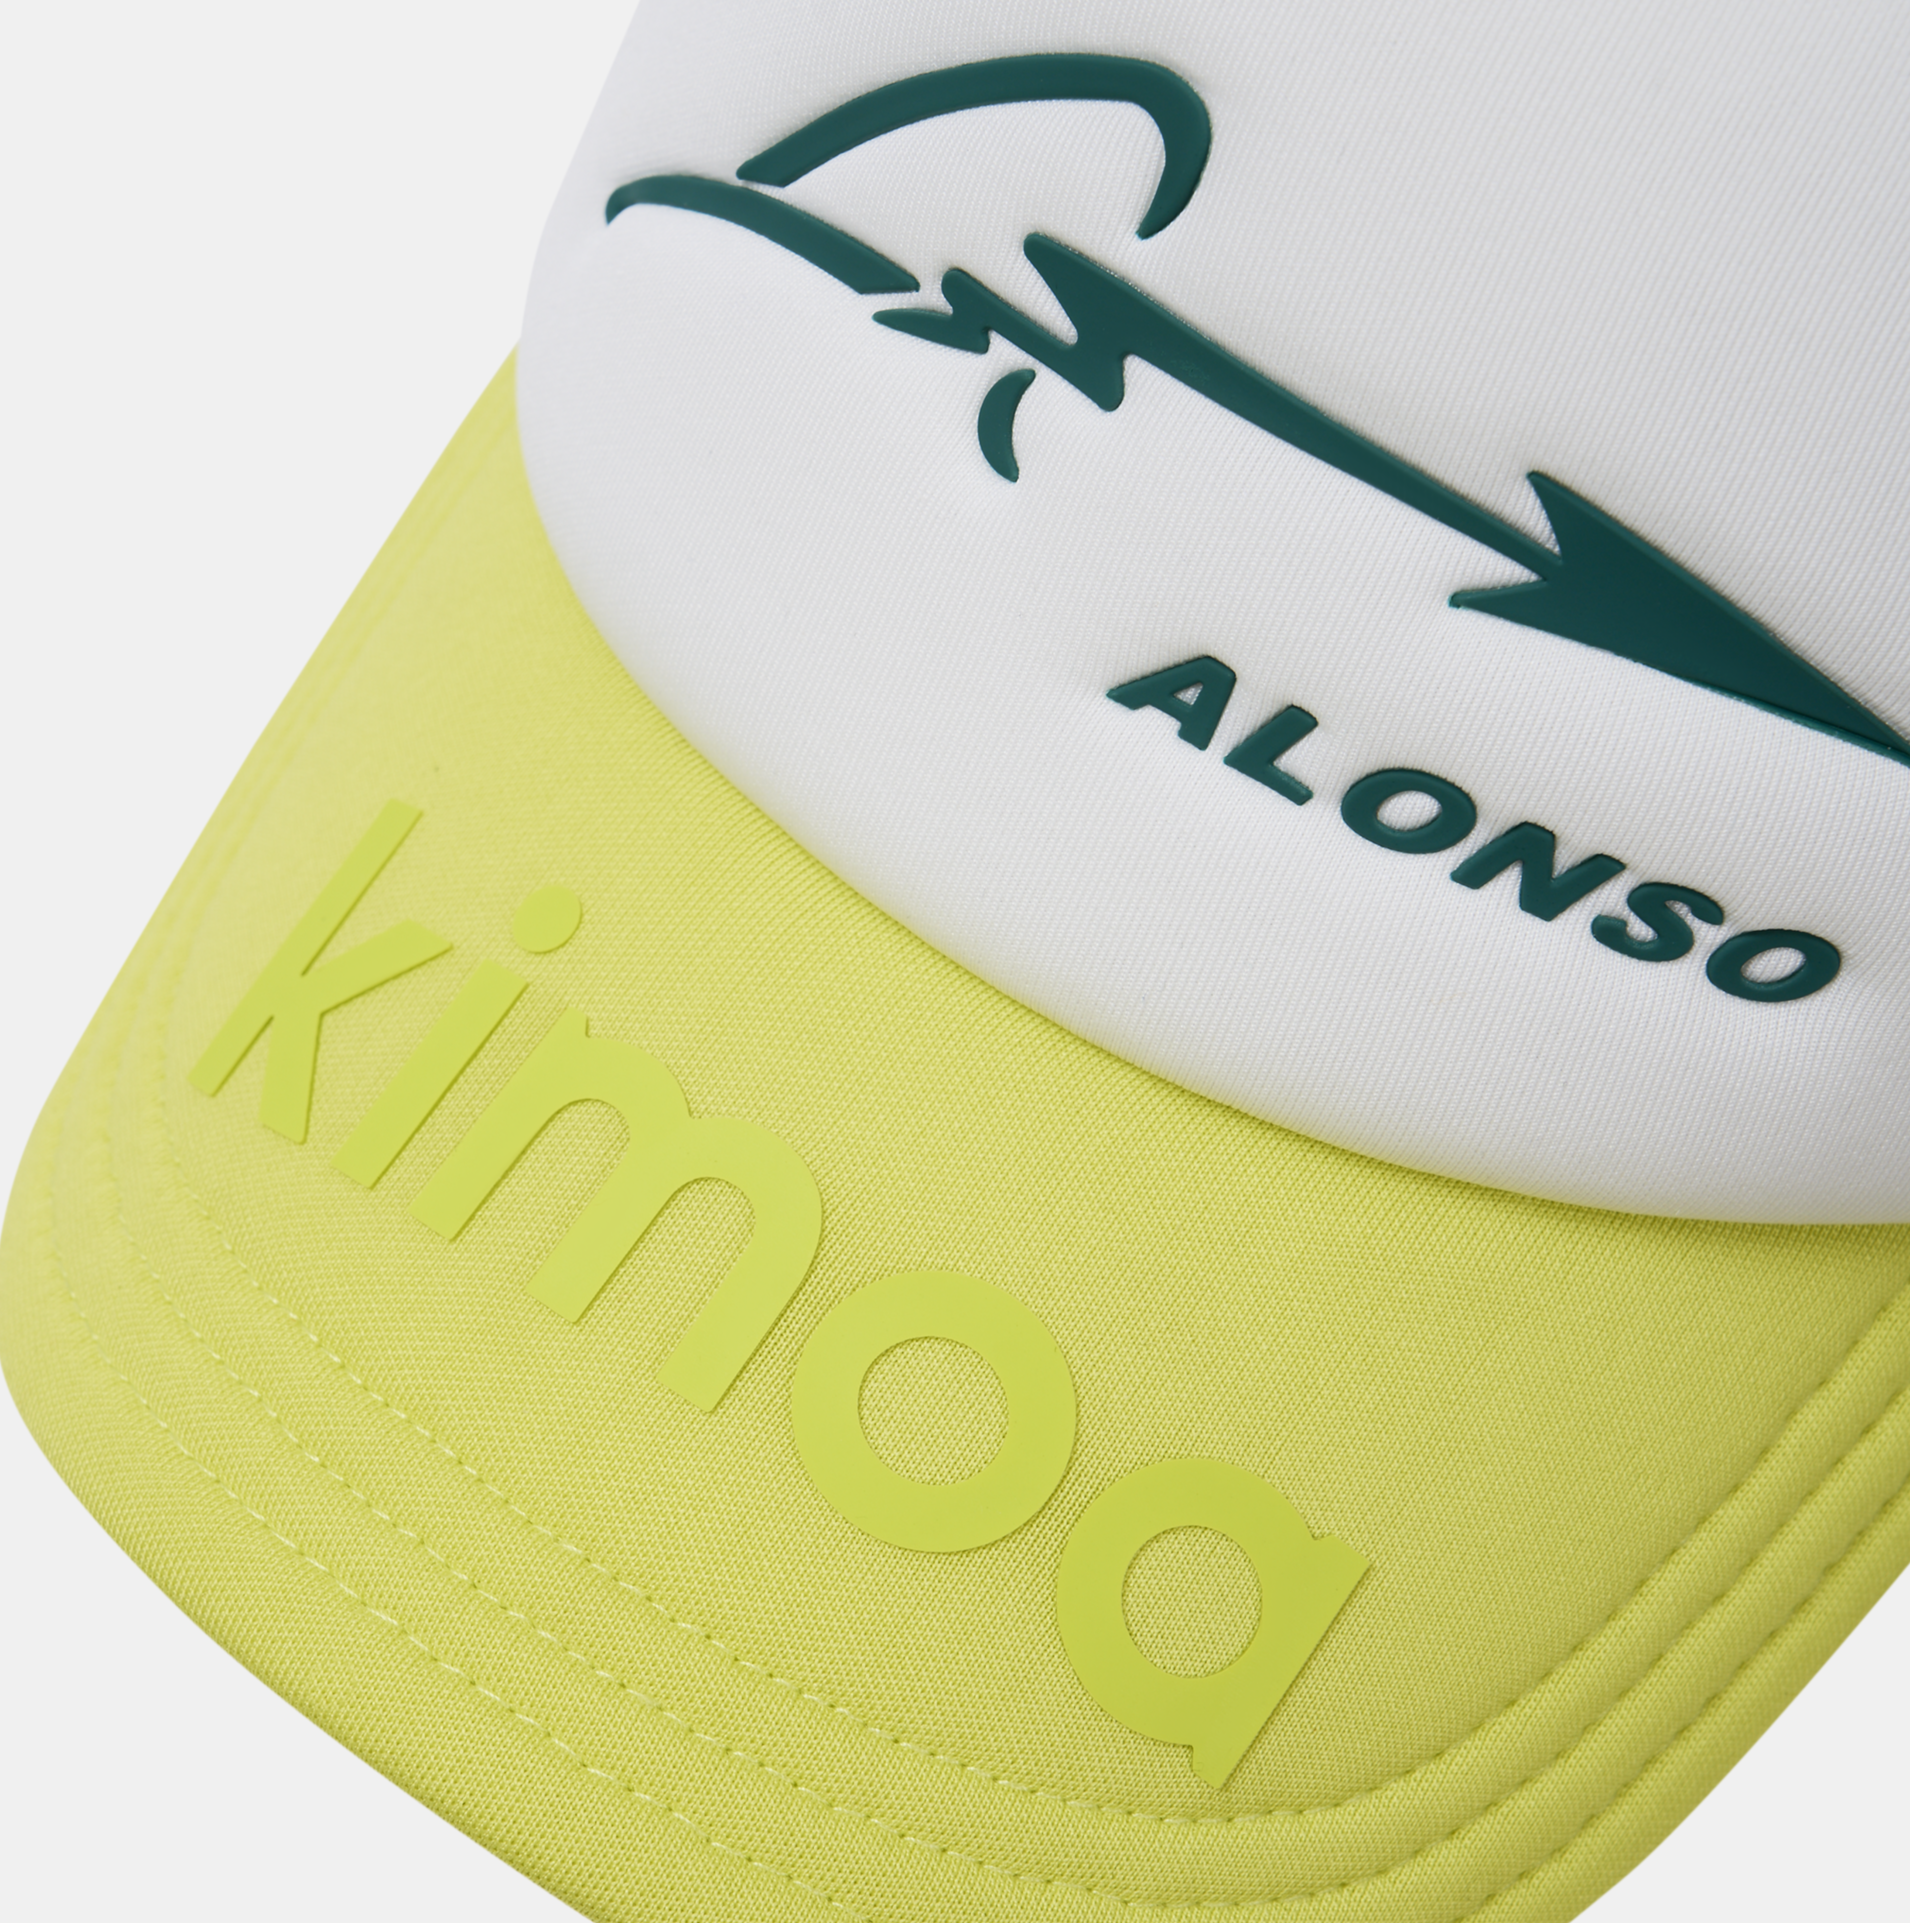 Aston Martin F1 Team x Kimoa Trucker Tricolor Cap